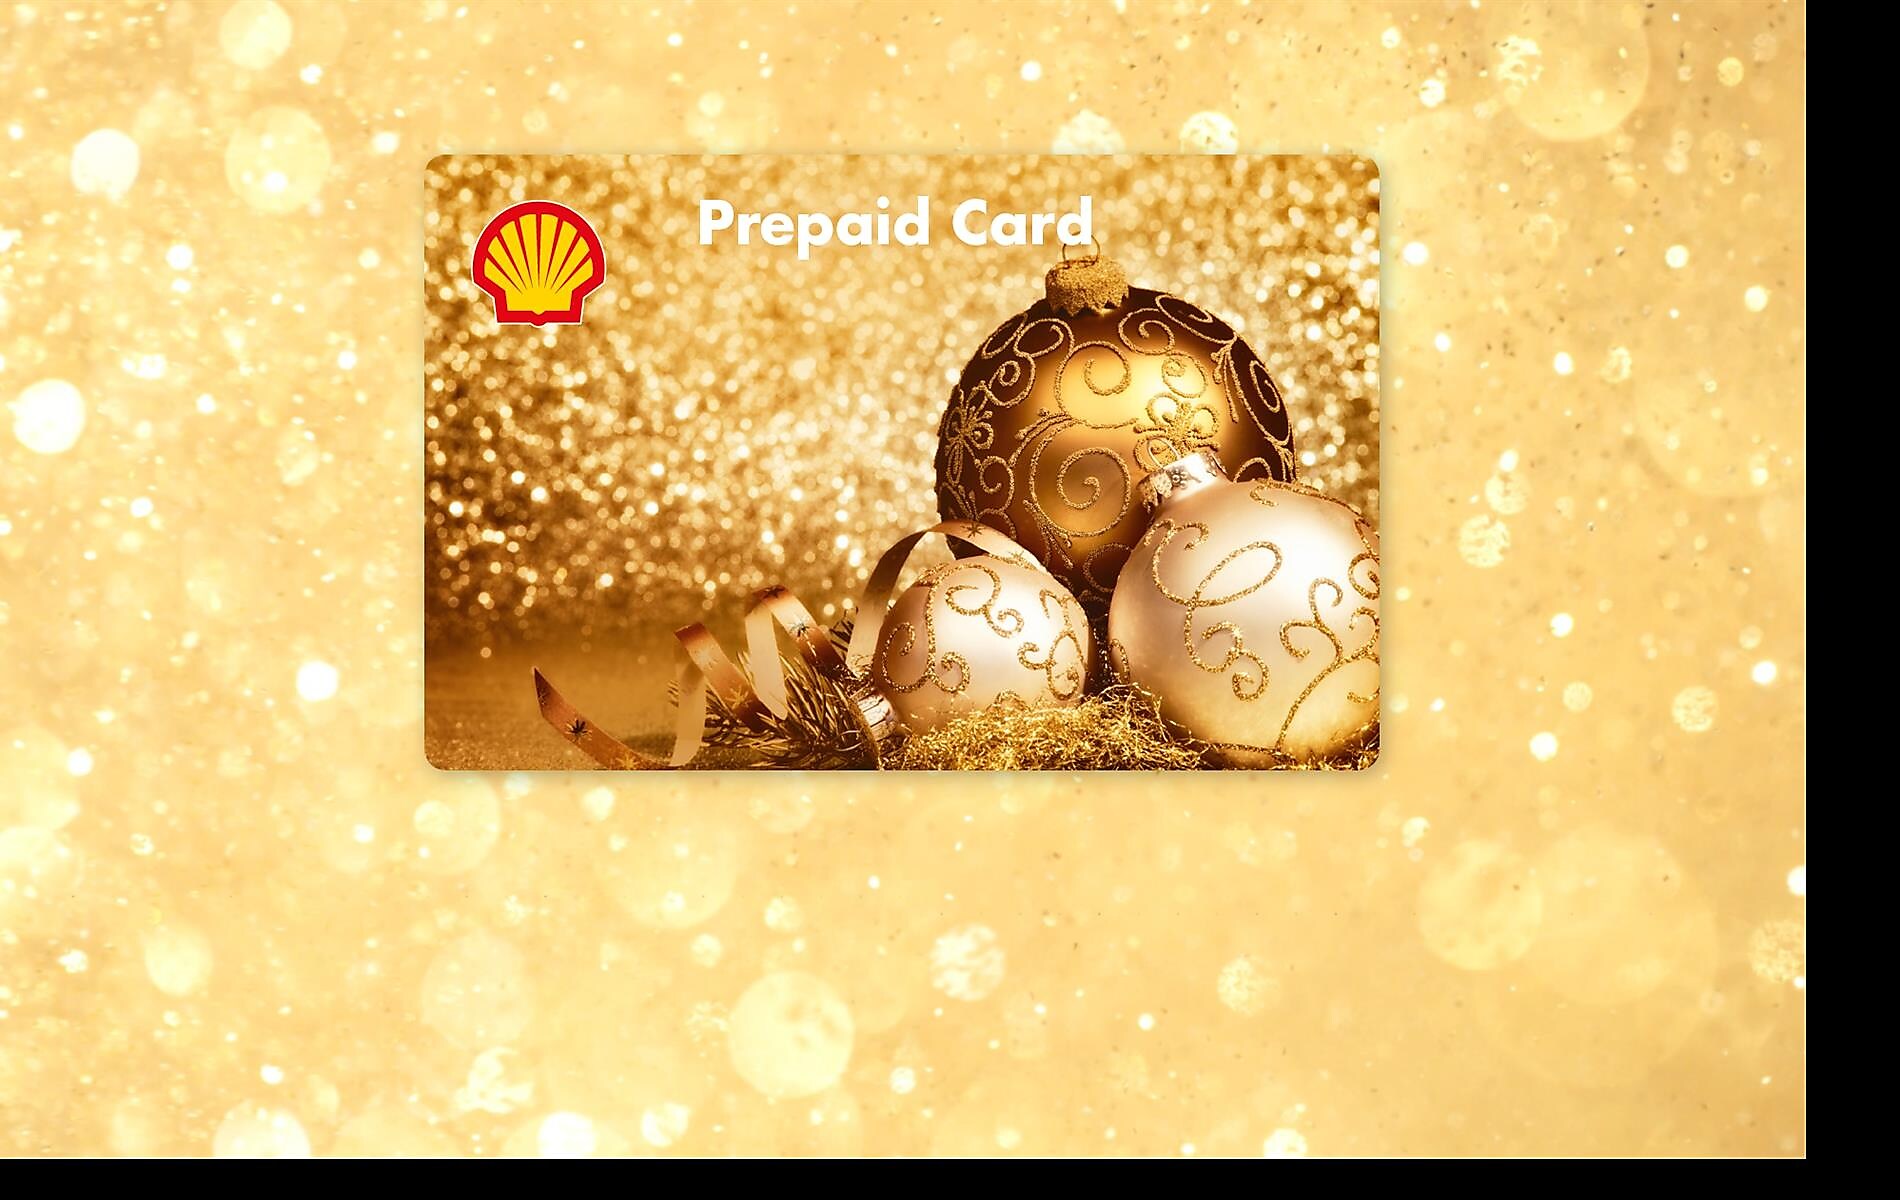 Jetzt Shell Prepaid Cards verschenken  